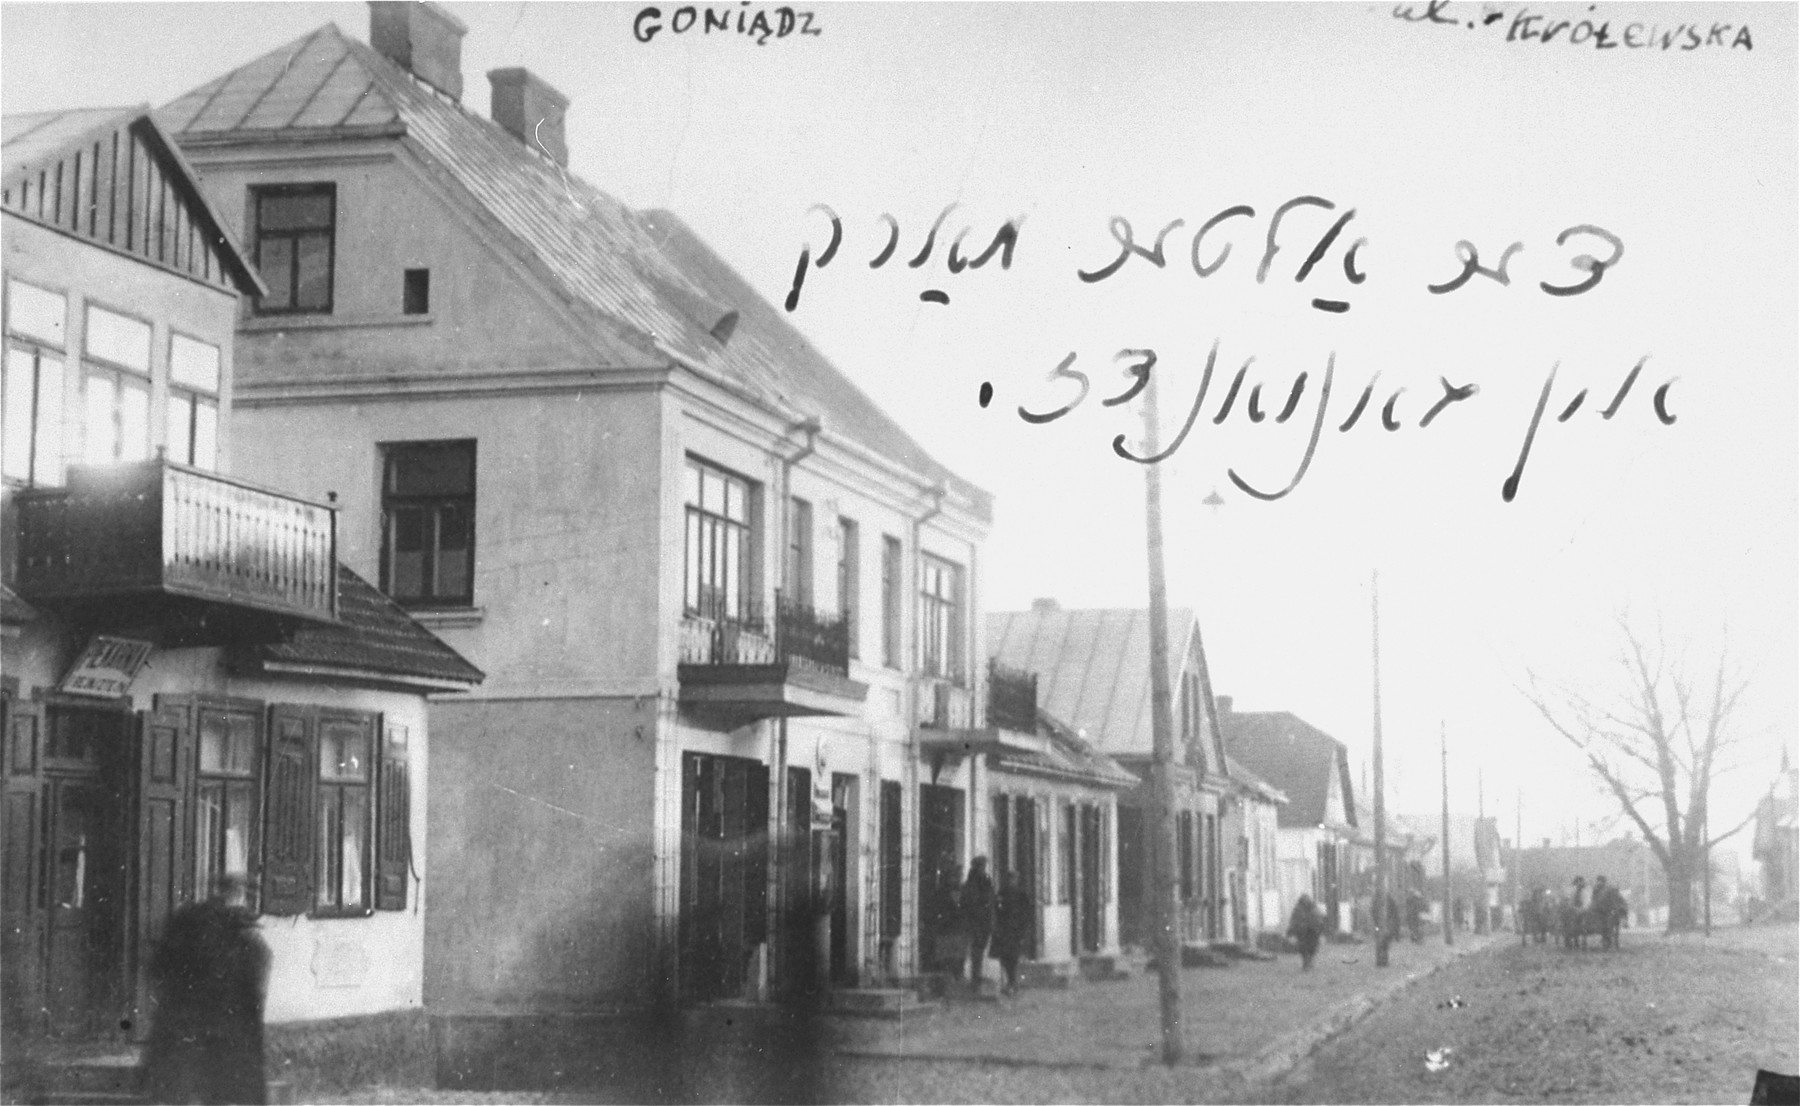 Krolewska Street in Goniadz, market place.